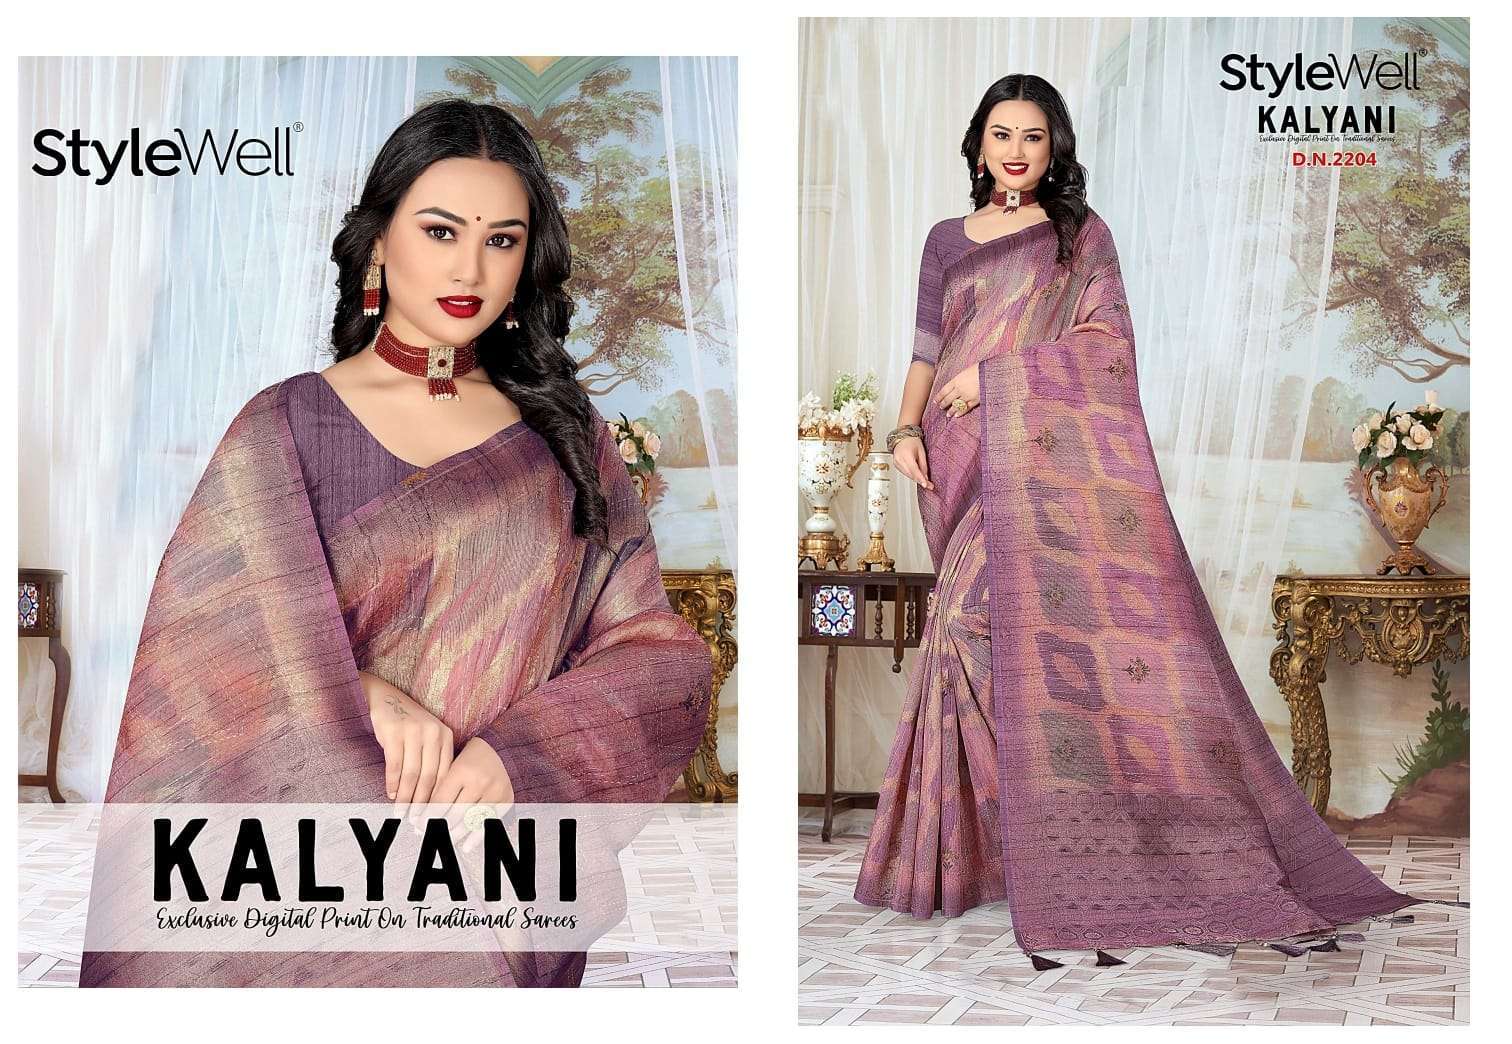 stylewell kalyani vol 1 digital print saree